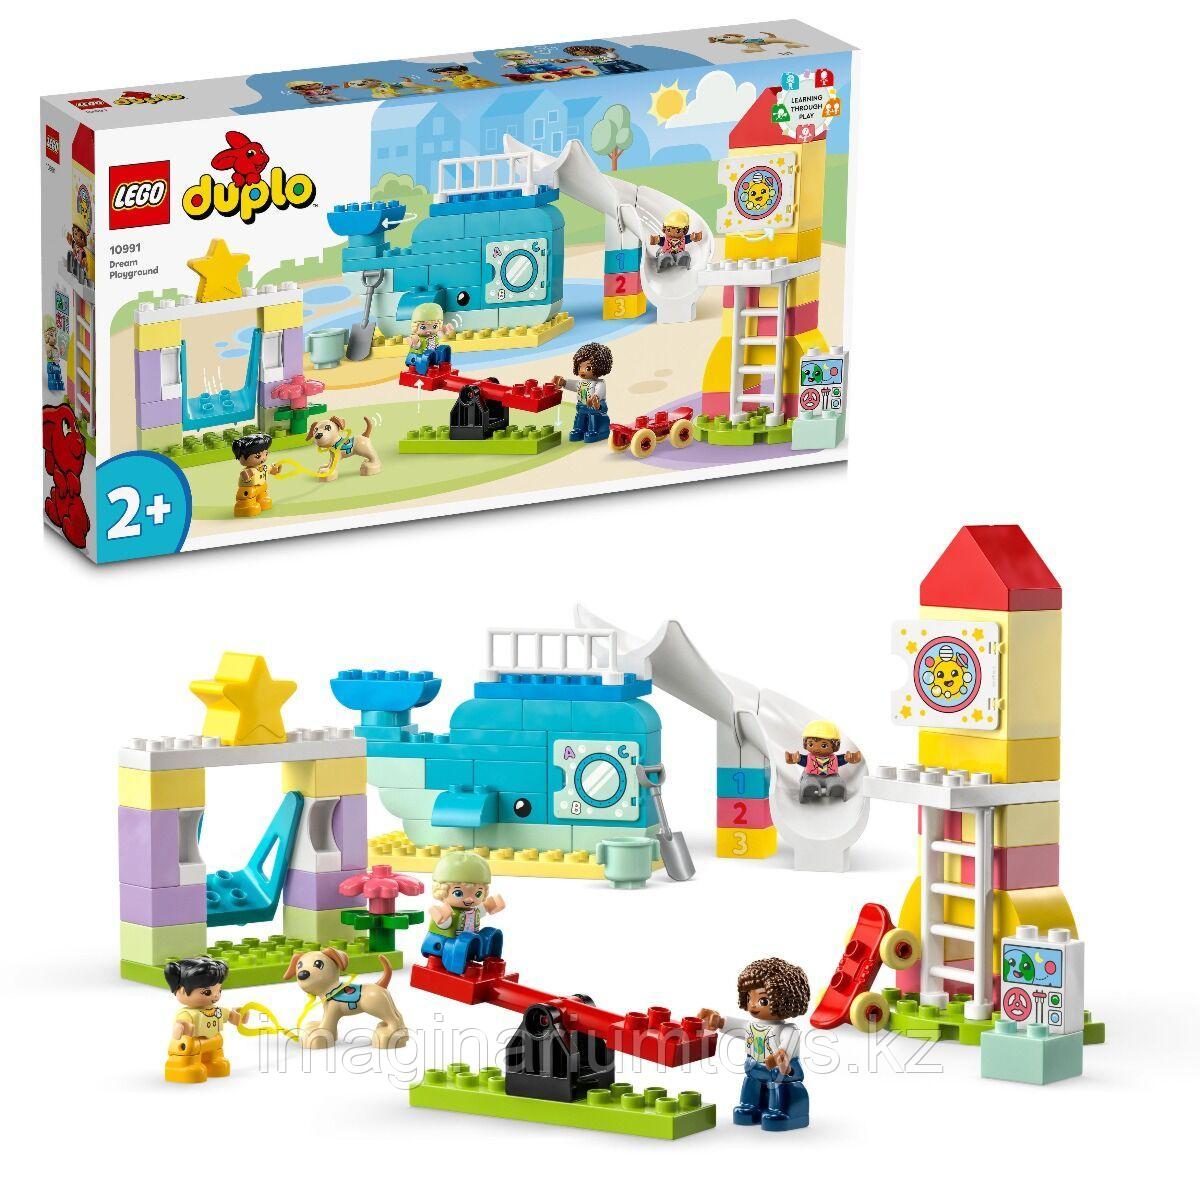 Конструктор Lego Duplo Игровая площадка мечты 10991